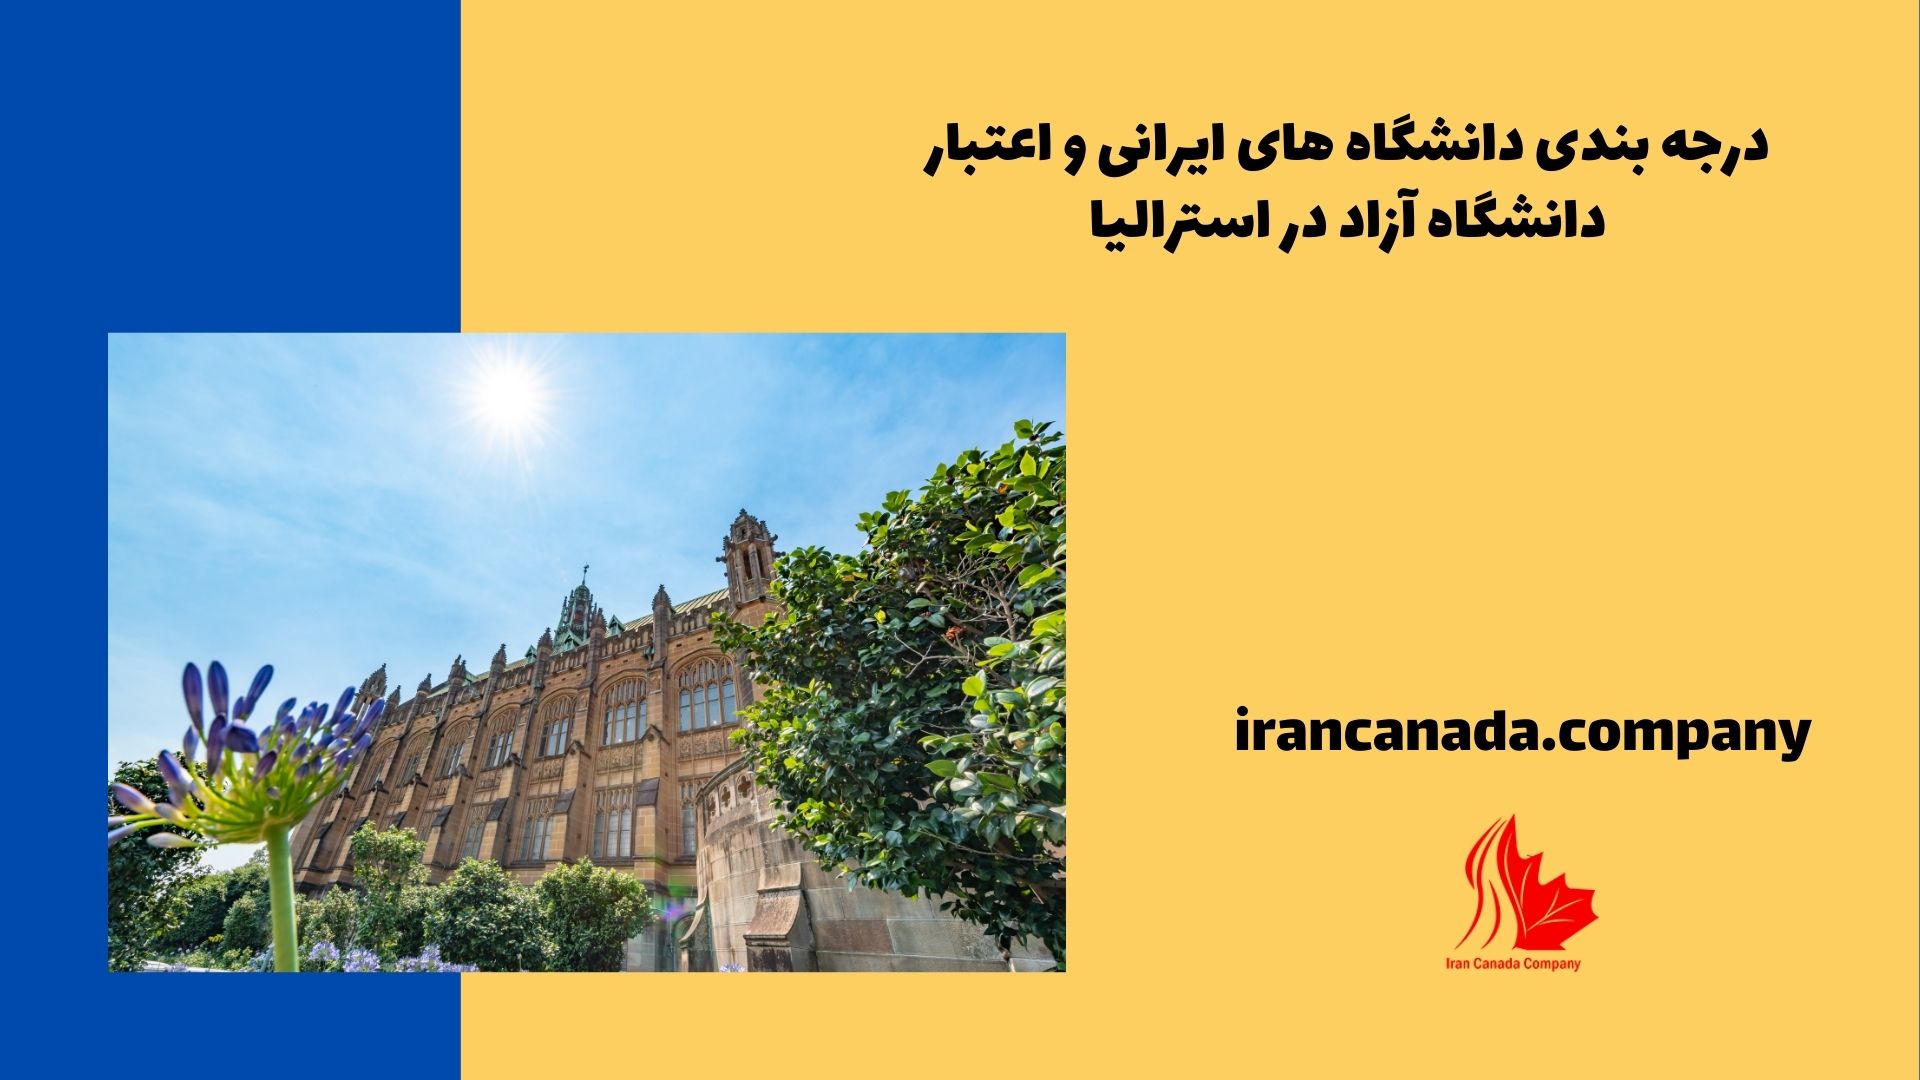 درجه بندی دانشگاه های ایرانی و اعتبار دانشگاه آزاد در استرالیا